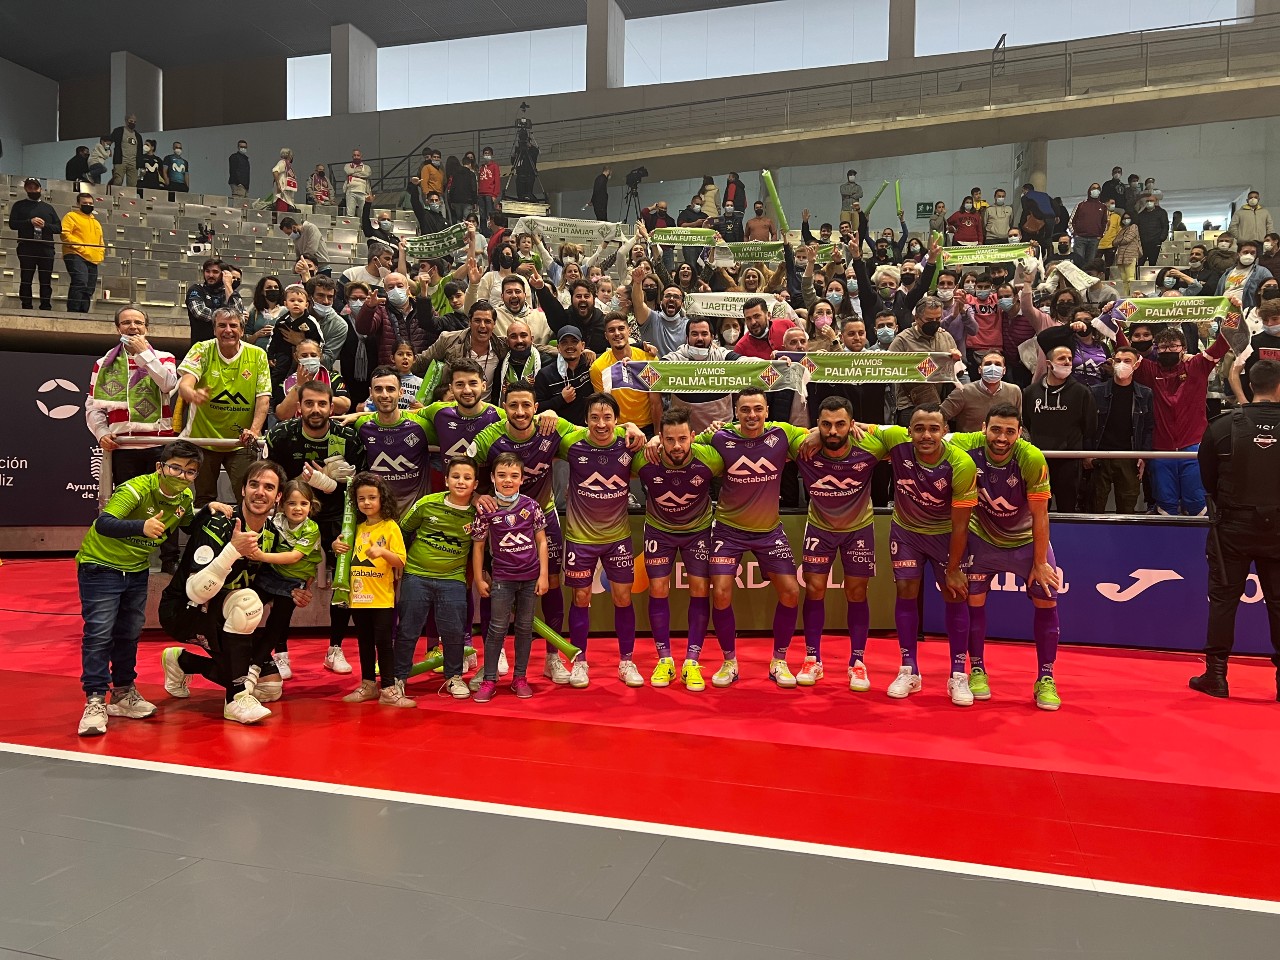 Los jugadores del Palma Futsal celebran la victoria junto a la afición